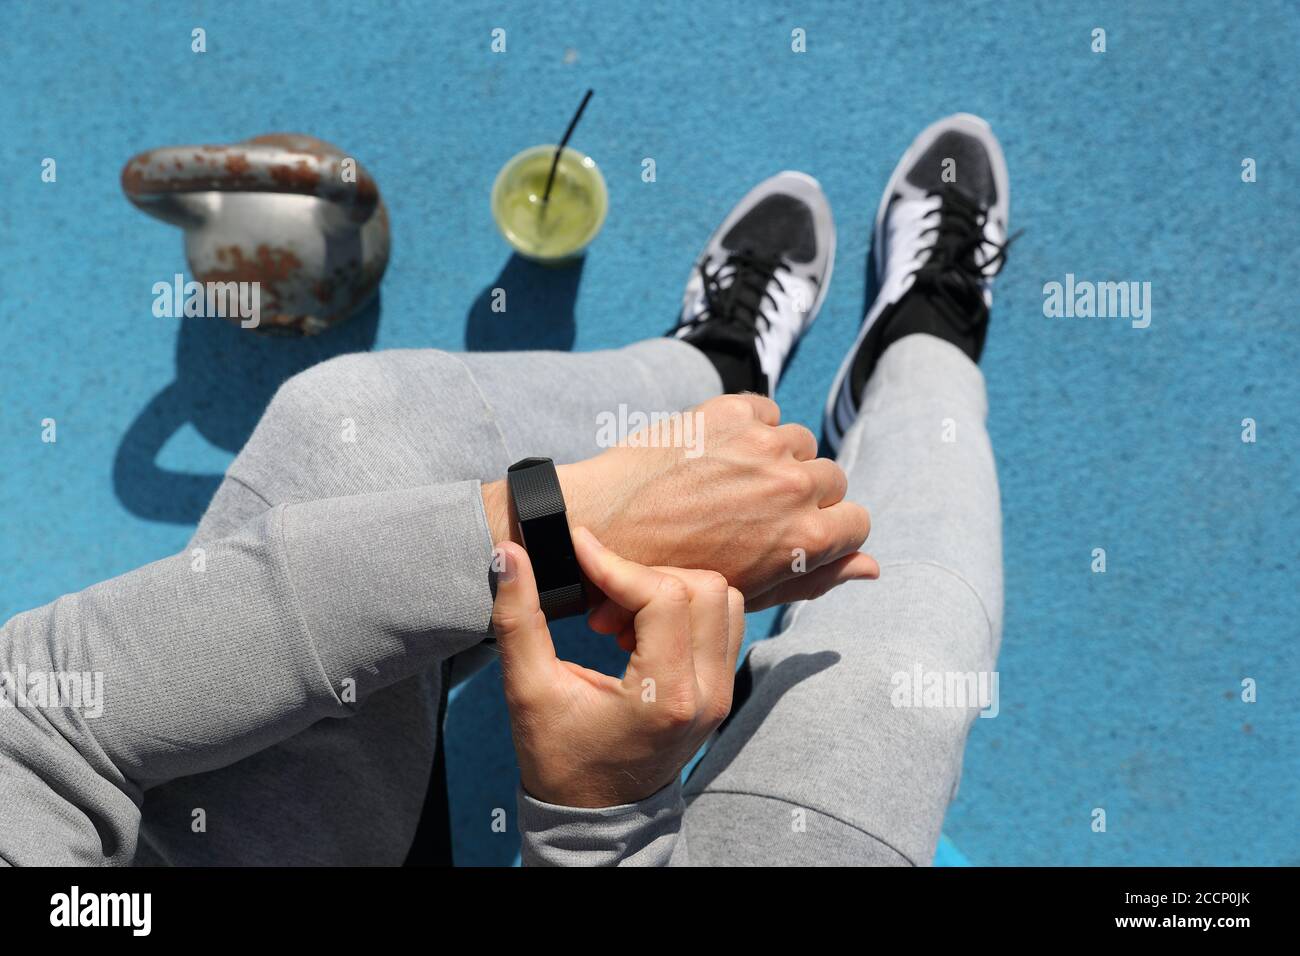 Gym Mann berührt Smartwatch Bildschirm während des Trainings Krafttraining. Draufsicht von oben: kettlebell Gewichte, grüner Smoothie, Körper und Beine. POV Stockfoto